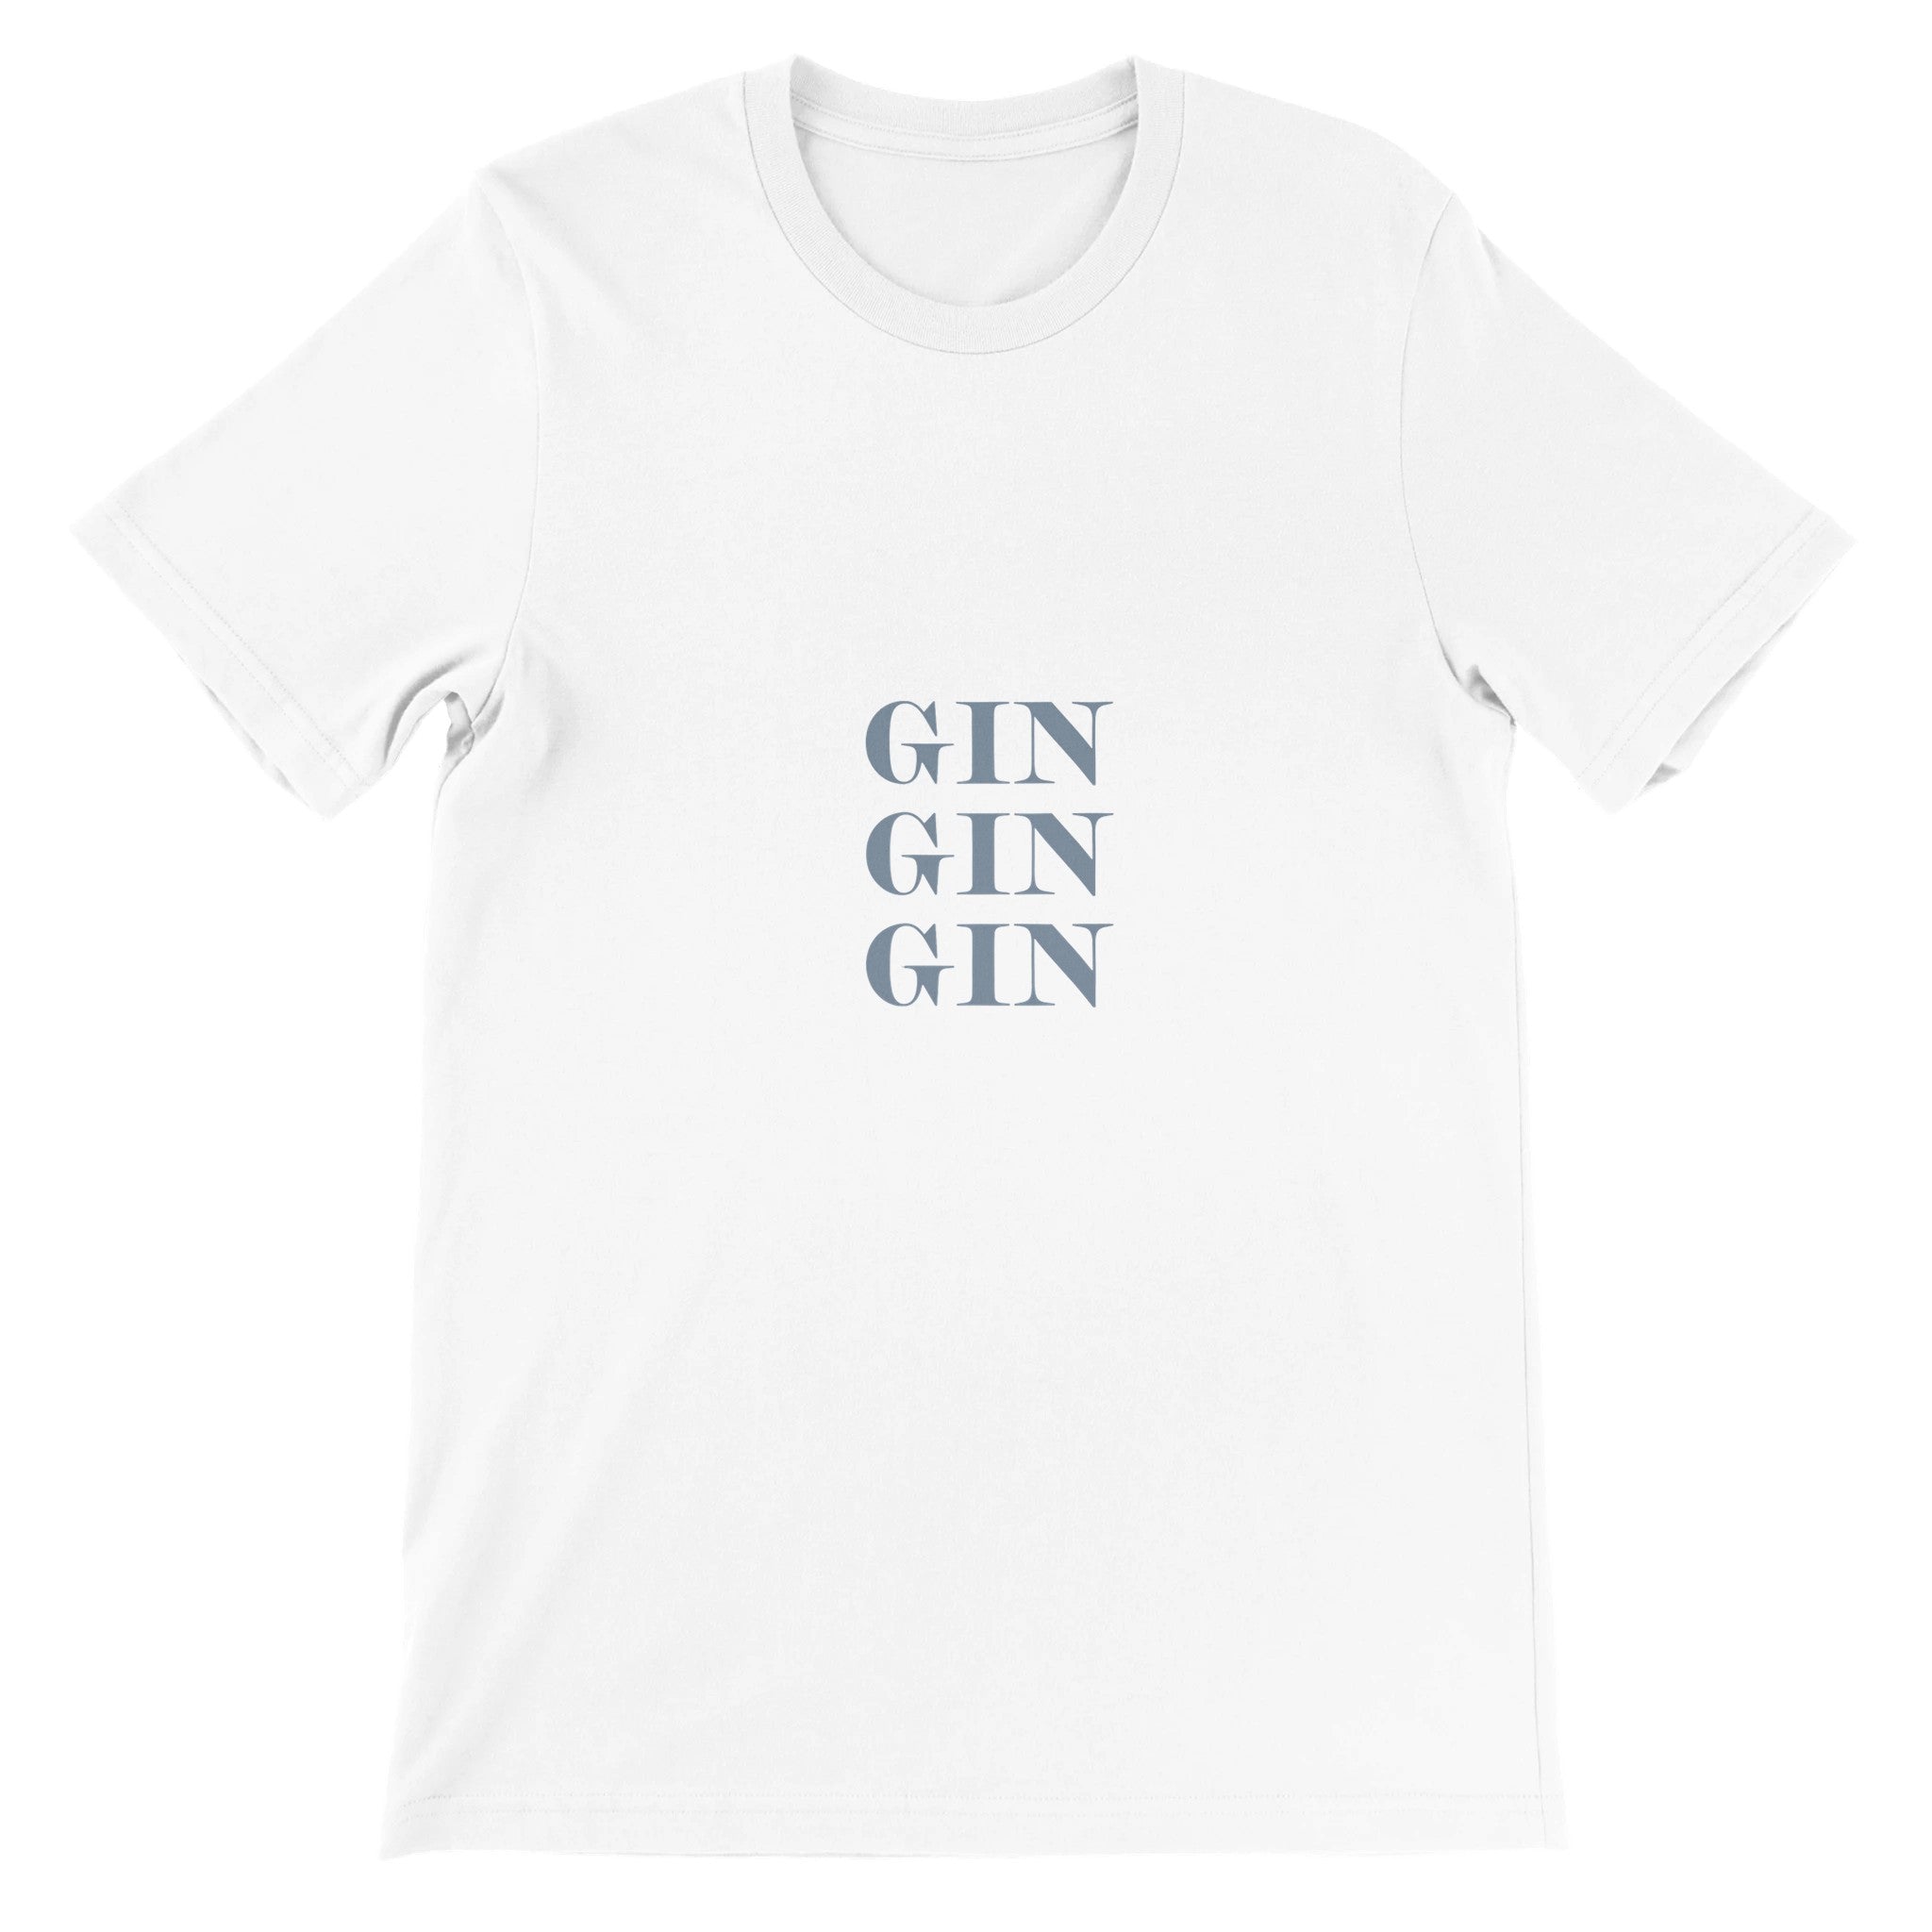 GIN GIN GIN Crewneck T-shirt - Optimalprint